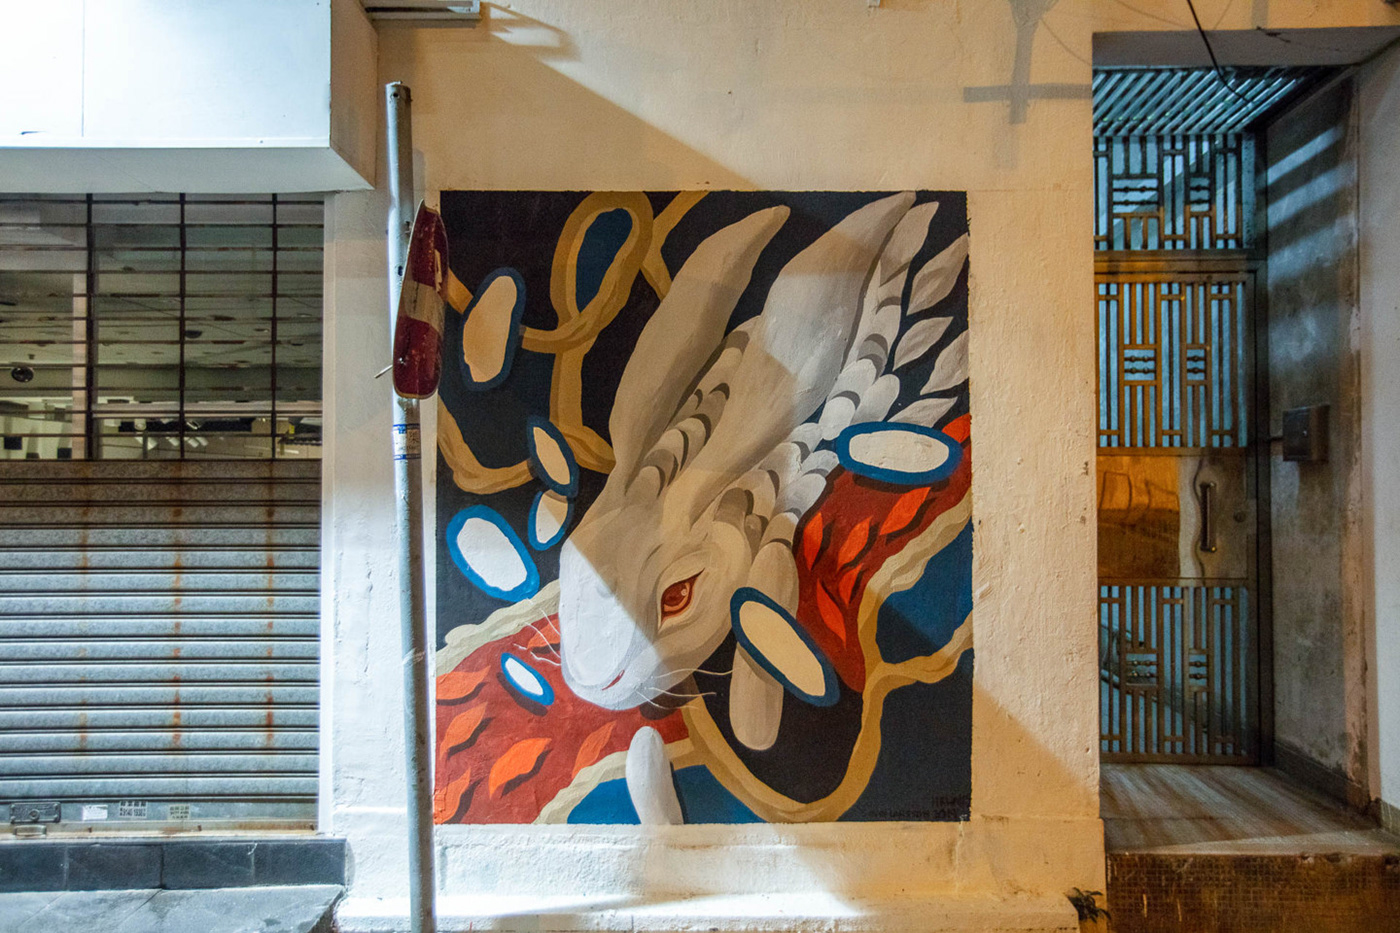 HKWALLS 2019 Street Art - Moon Rabbit mural in Hong Kong, by Shann Larsson - Vans HK 